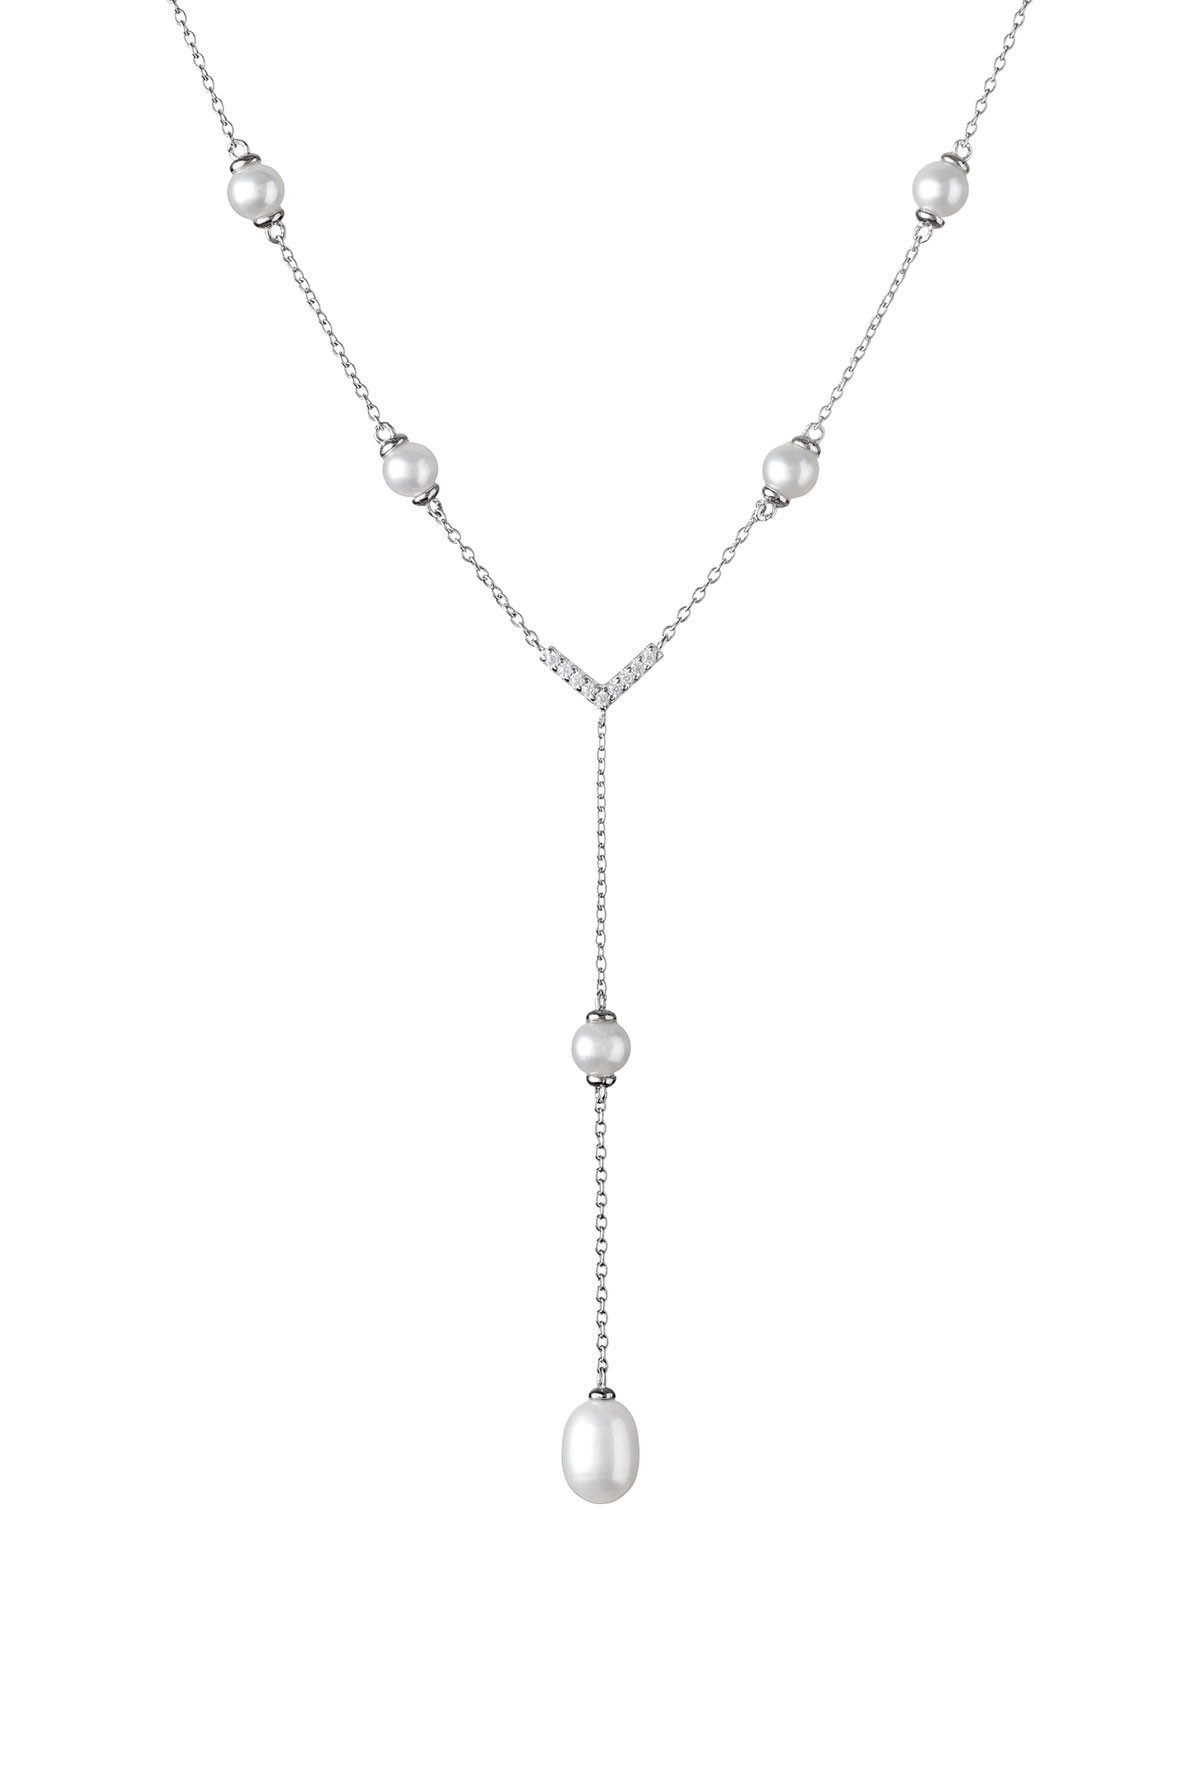 Gaura Pearls Silberkette mit echten Perlen weiß, 7-7.5 mm, 36 cm (6 cm), Zirkonia, 925er rhodiniertes Silber